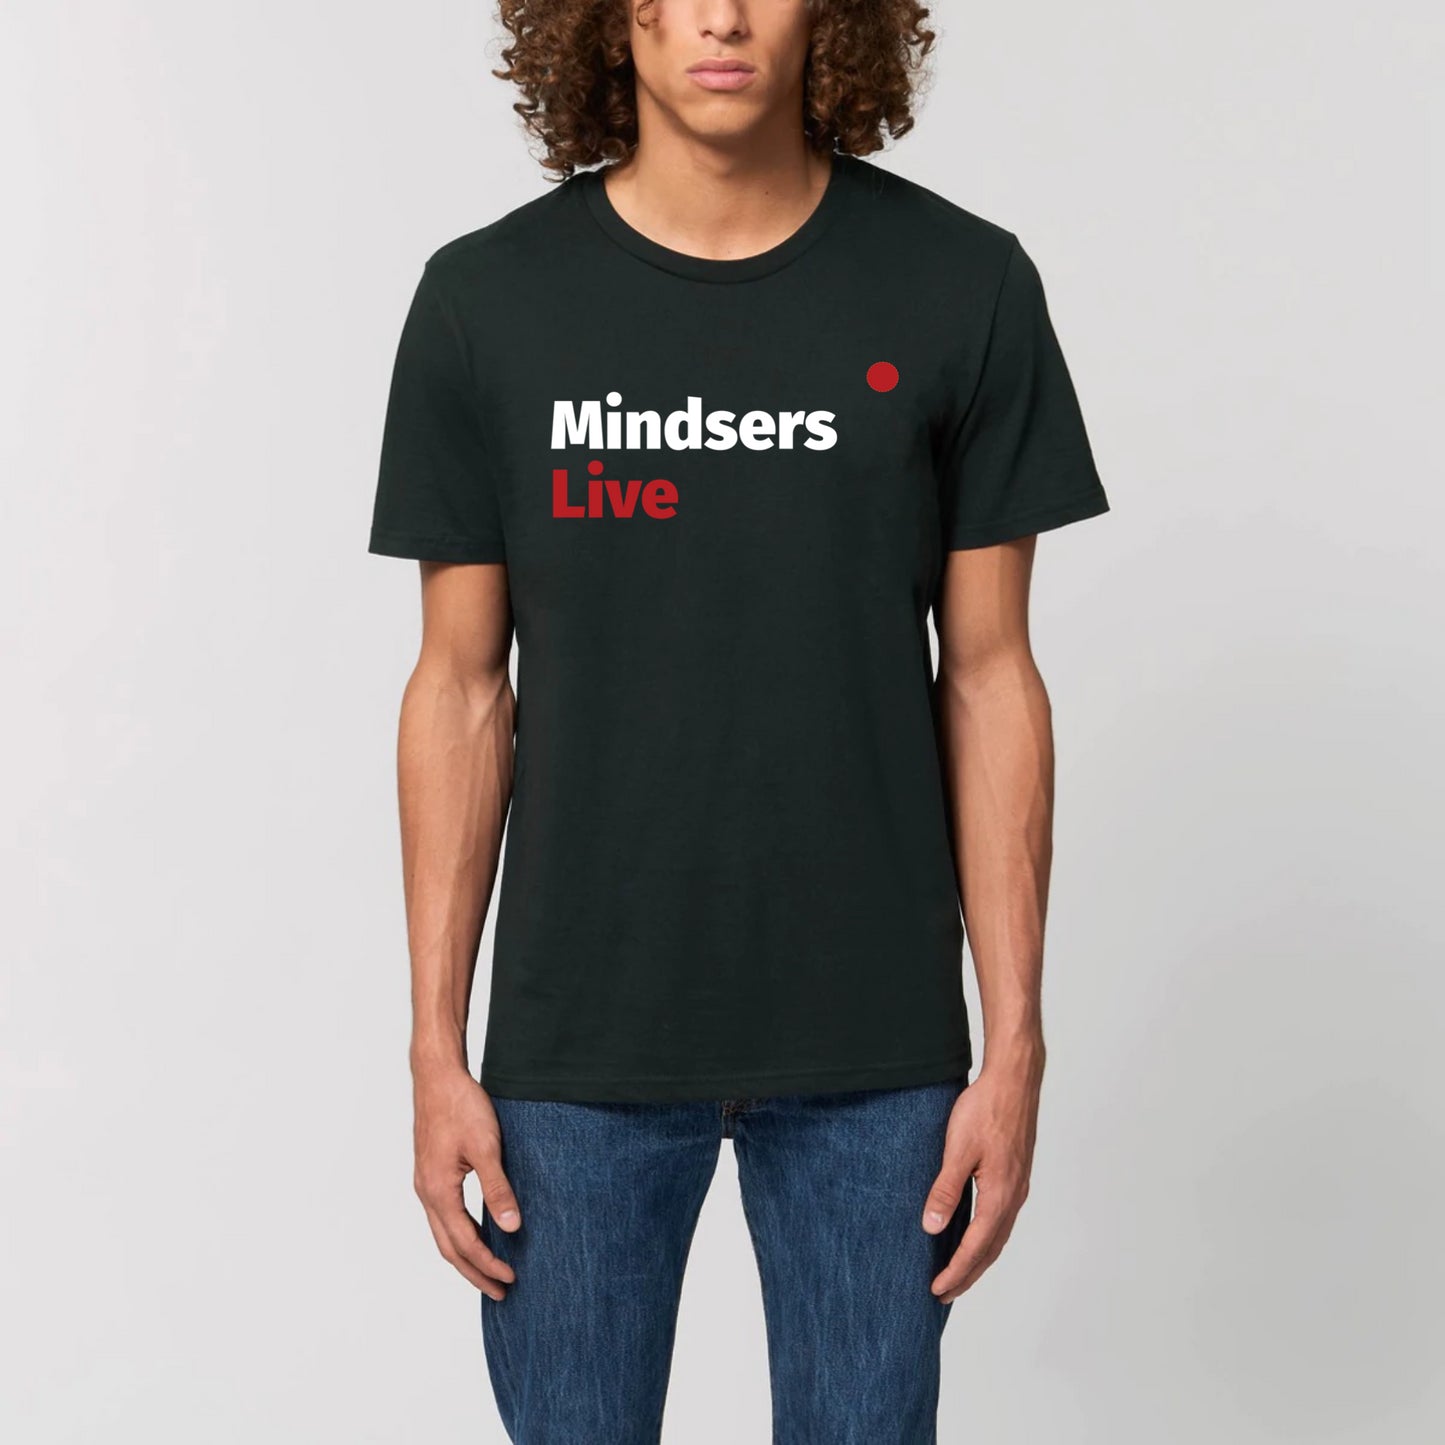 Mindsers Live – t-shirt, unisexe, bio